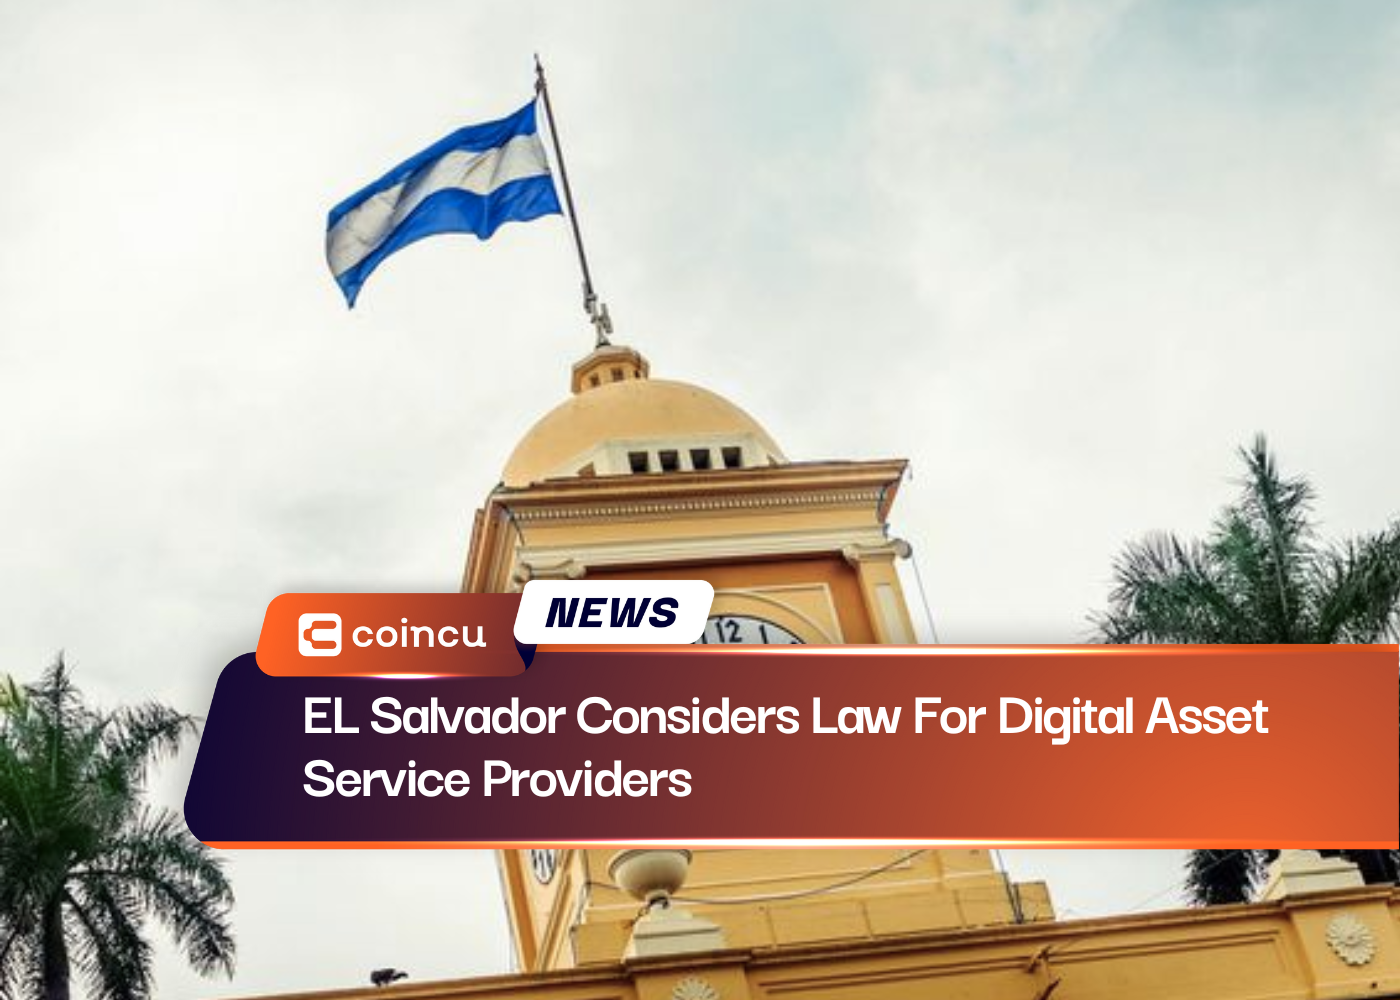 El Salvador analiza ley para proveedores de servicios de activos digitales